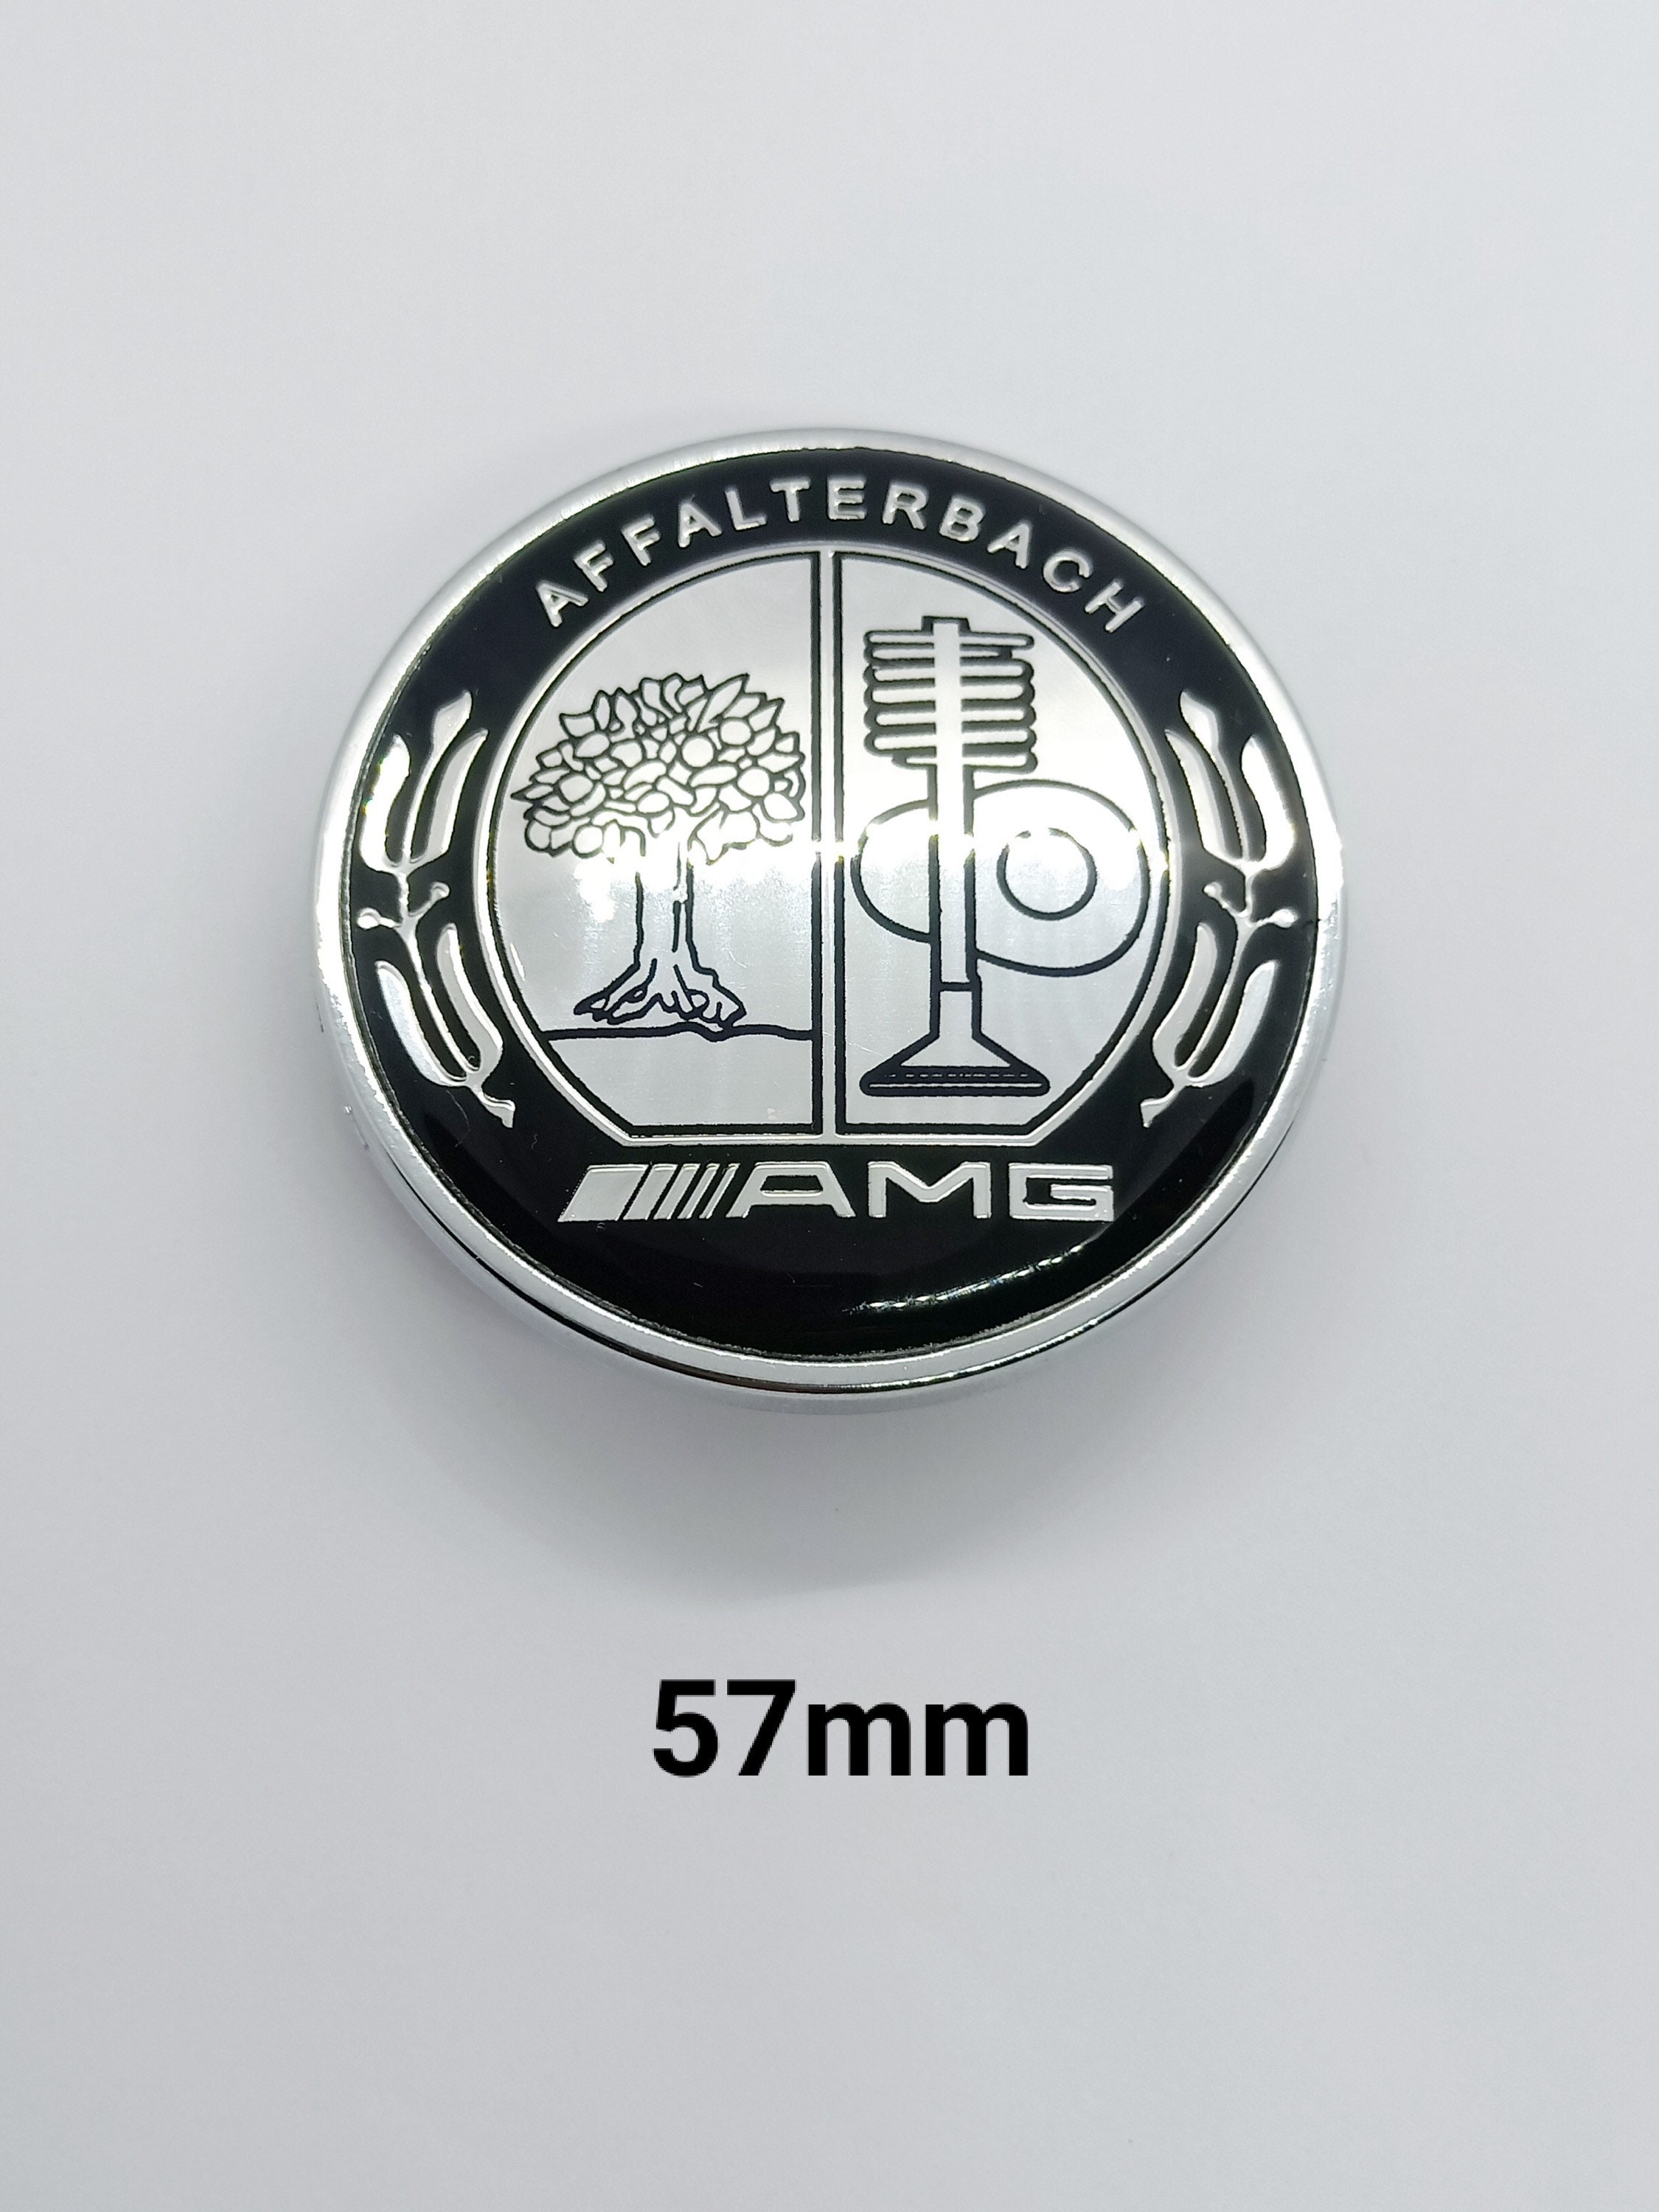 Black mercedes amg affalterbach-germany badge emblem 80mm x 30mm